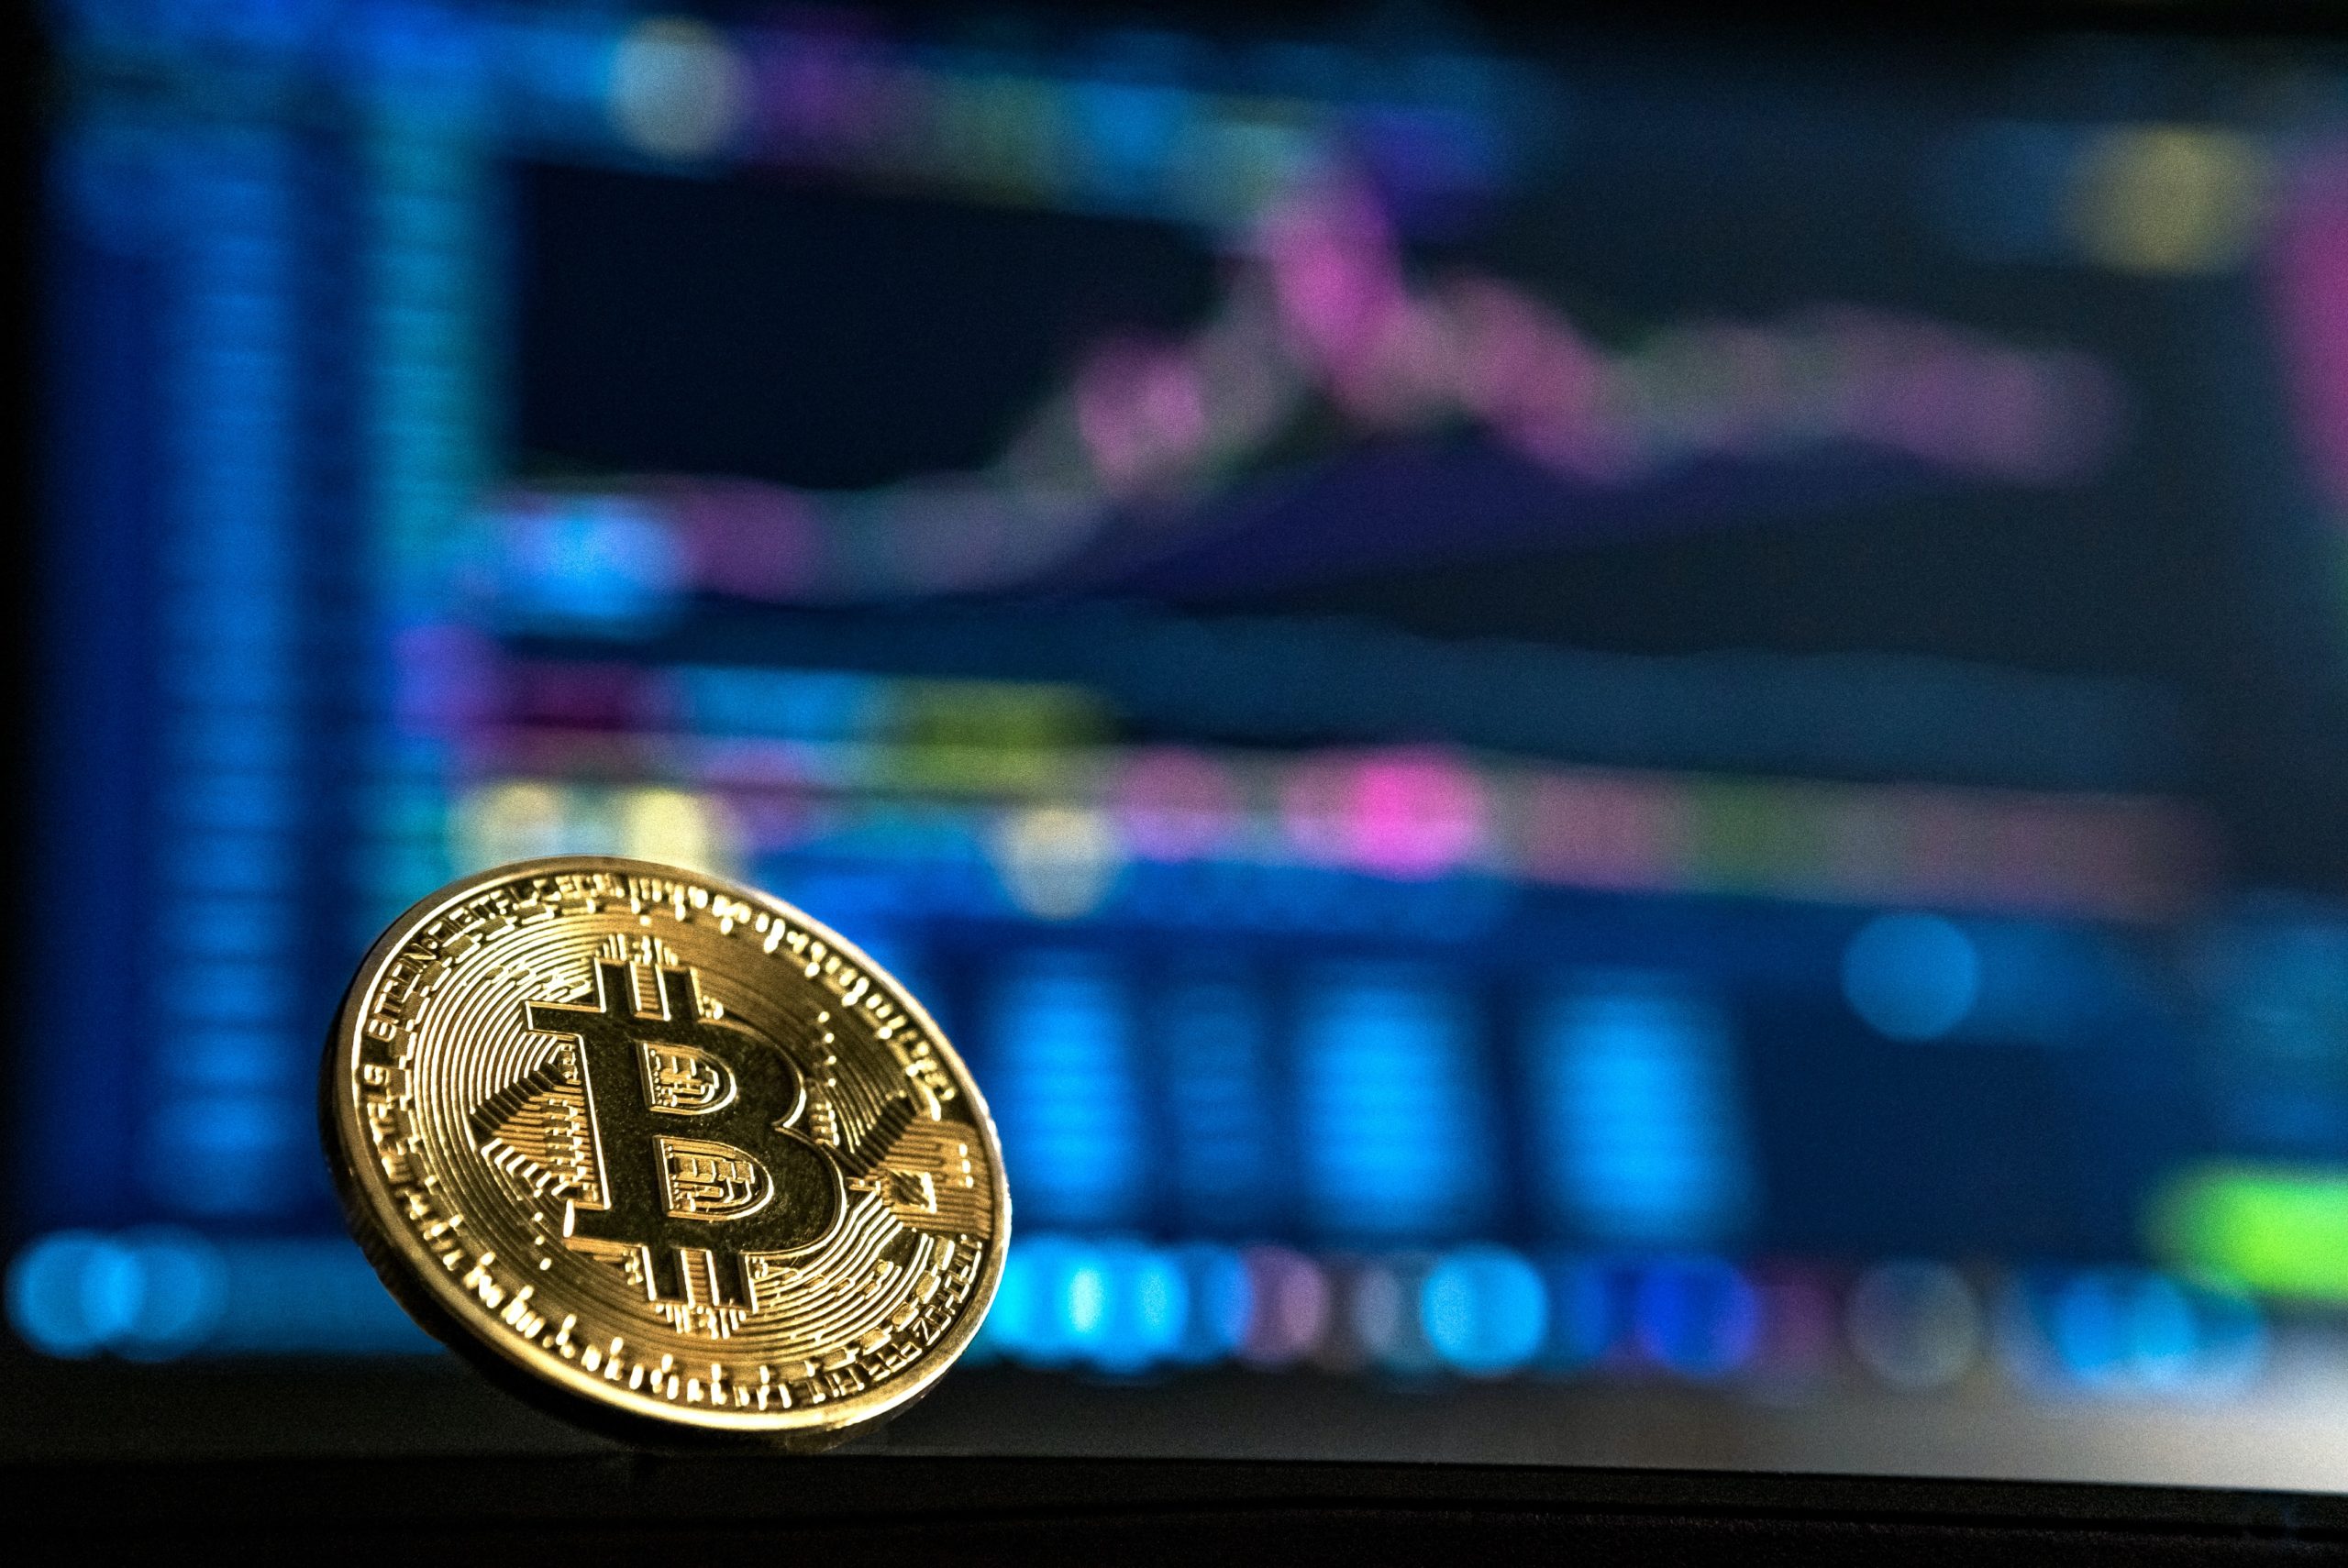 soll ich langfristig in bitcoin investieren? in krypto investieren oder nicht